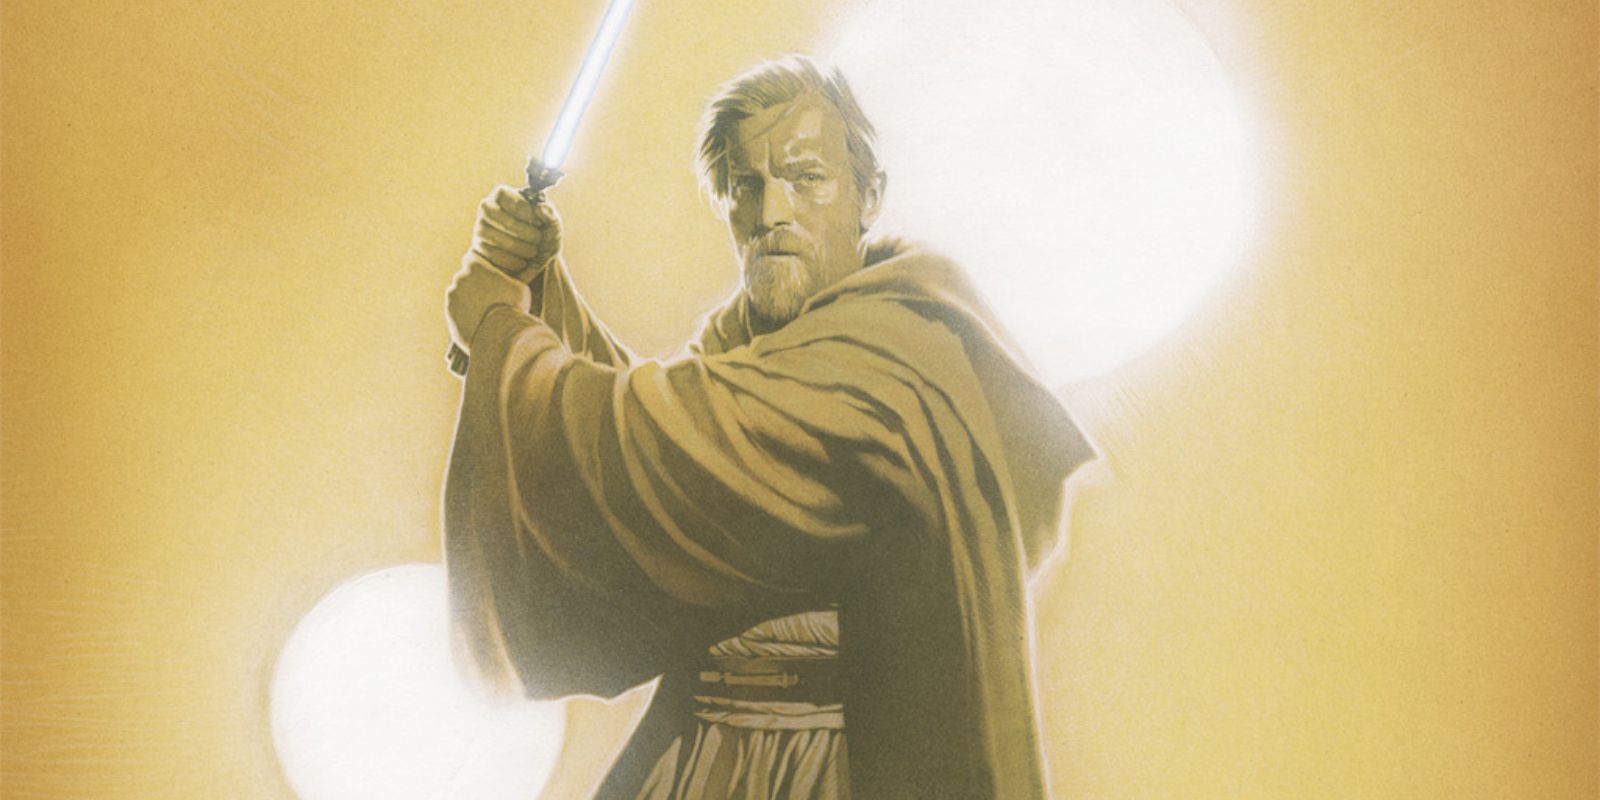 Obi-Wan holding a lightsaber in the desert